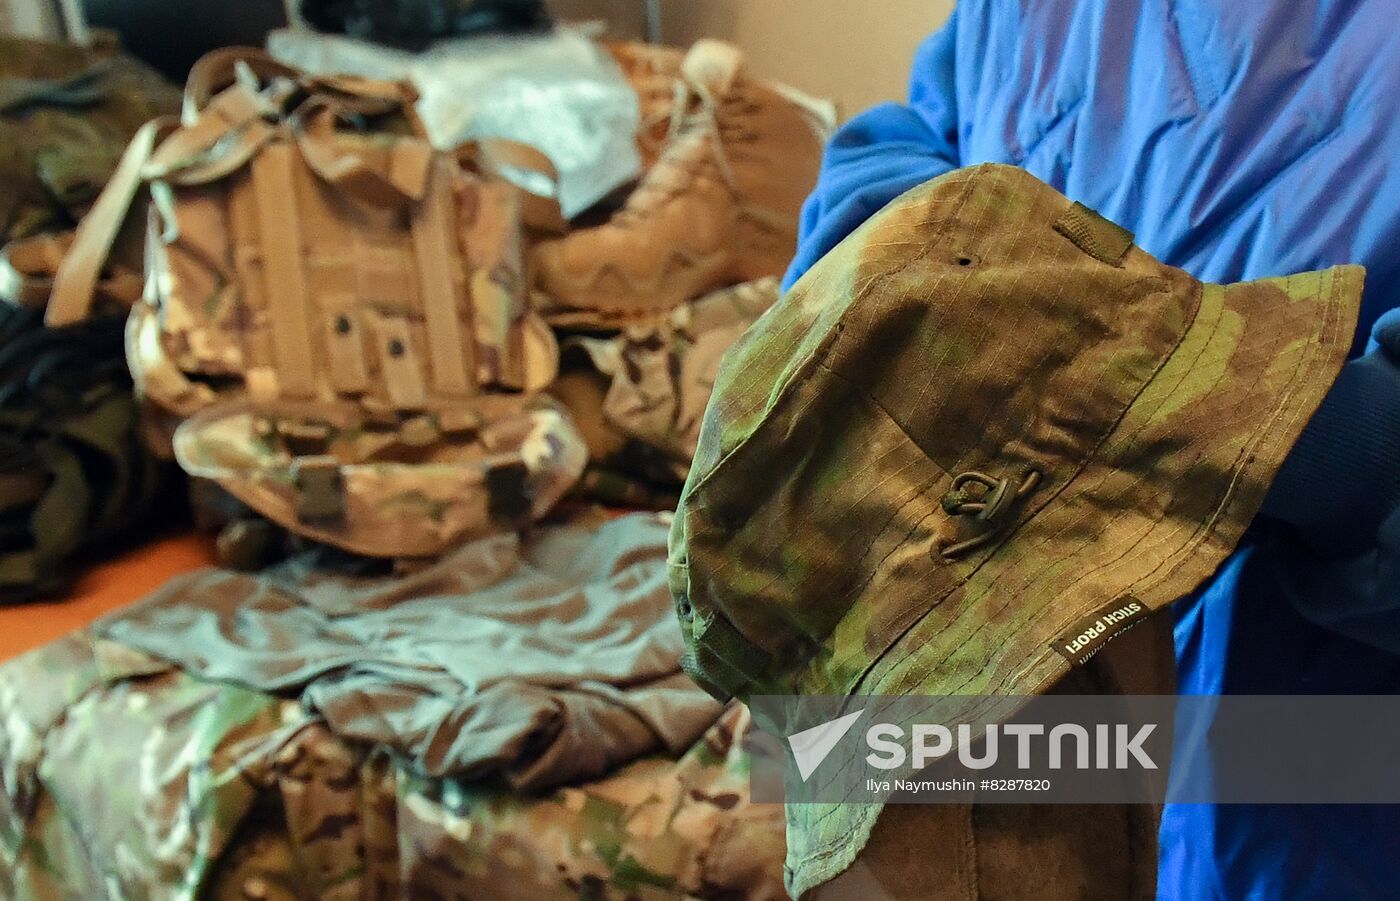 Russia Ukraine Military Operation Equipment Supply